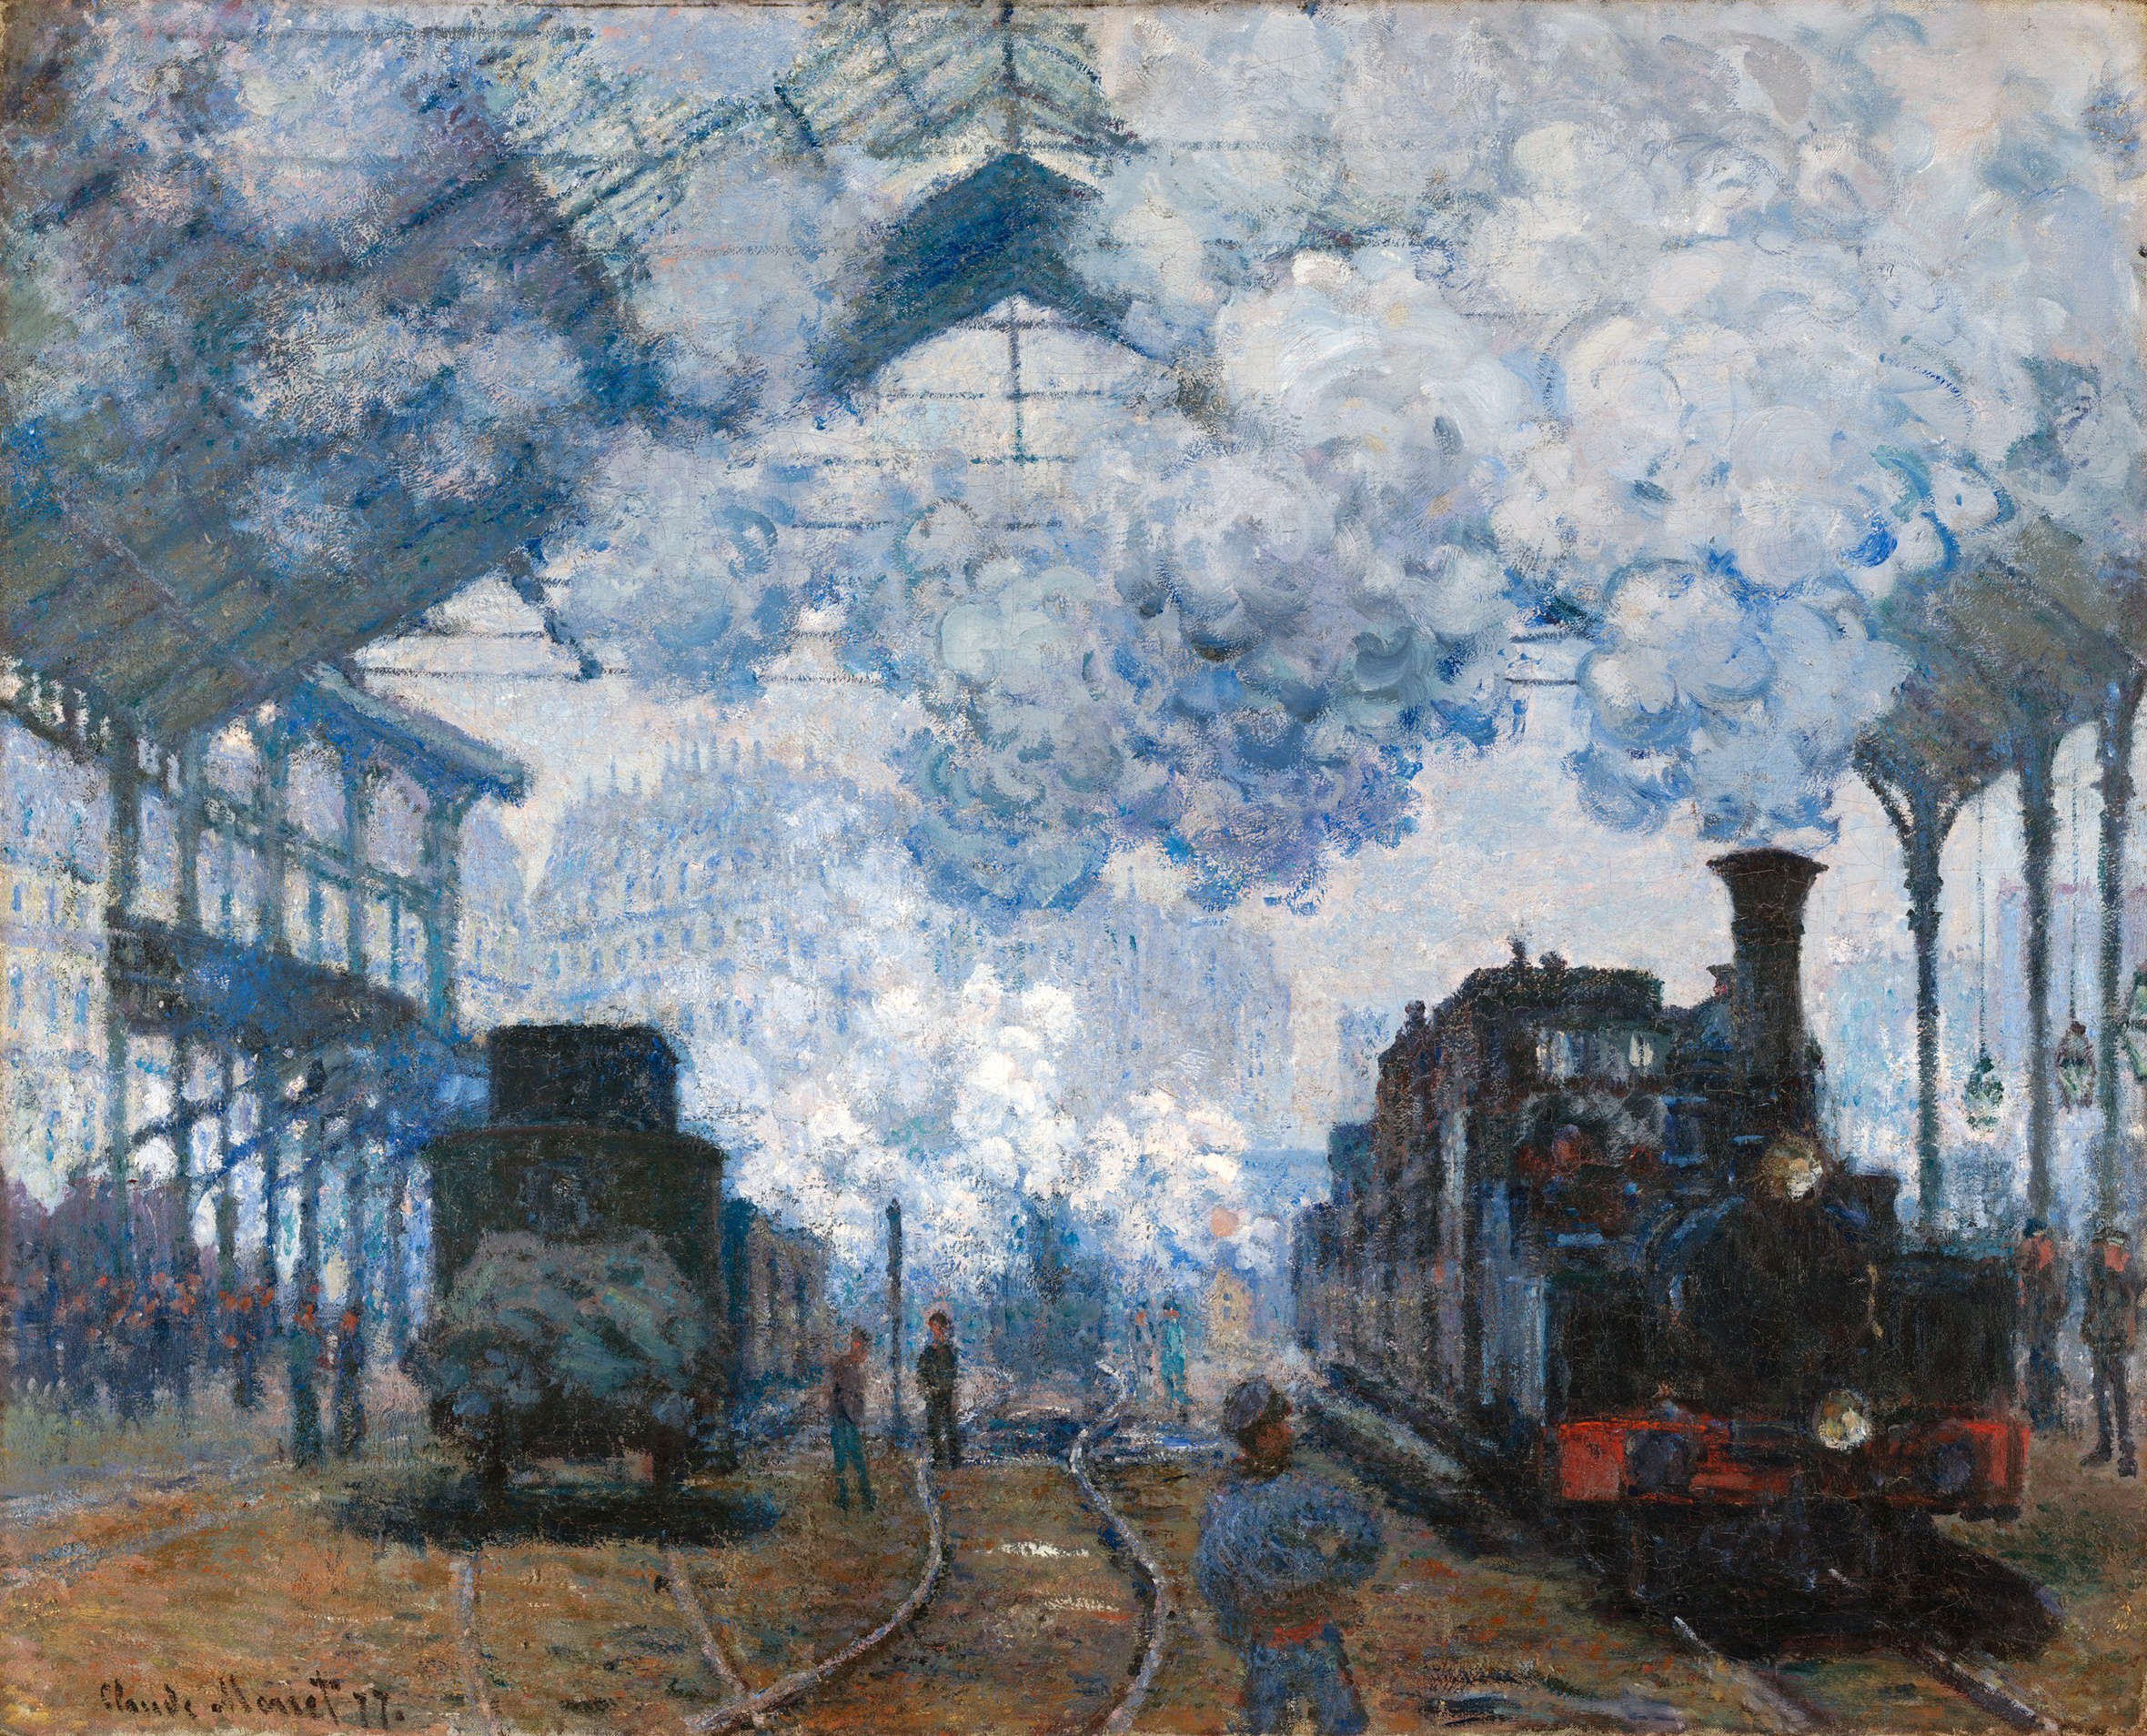 محطة القديس لعازر، وصول قطار by Claude Monet - 1877 م - 80 سم في 98 سم 